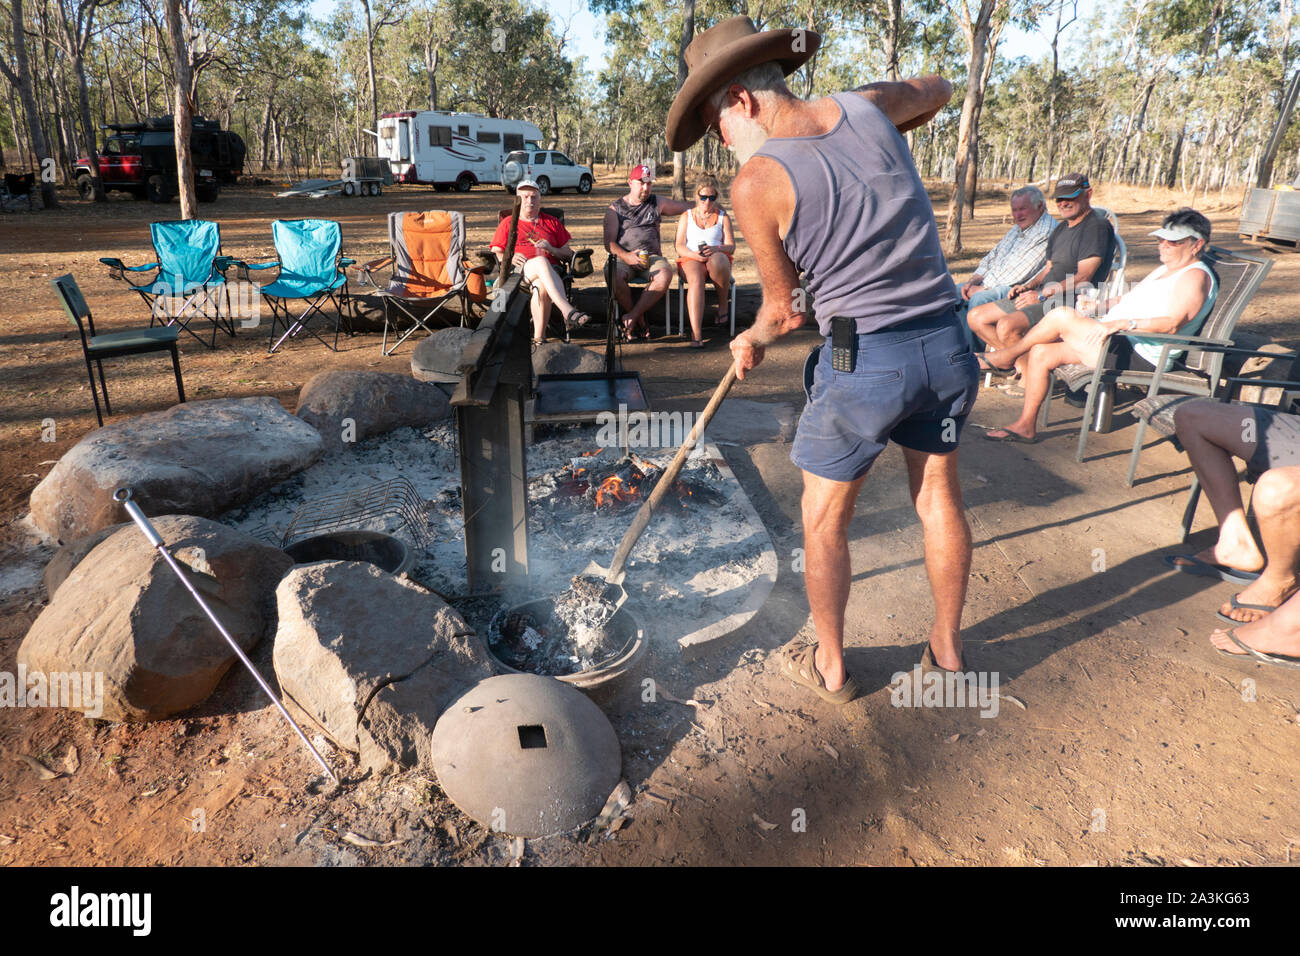 Bushman Kochen in einem Camp Backofen über einem Lagerfeuer, mit Bush Camper sitzen, Mareeba, Queensland, Queensland, Australien Stockfoto